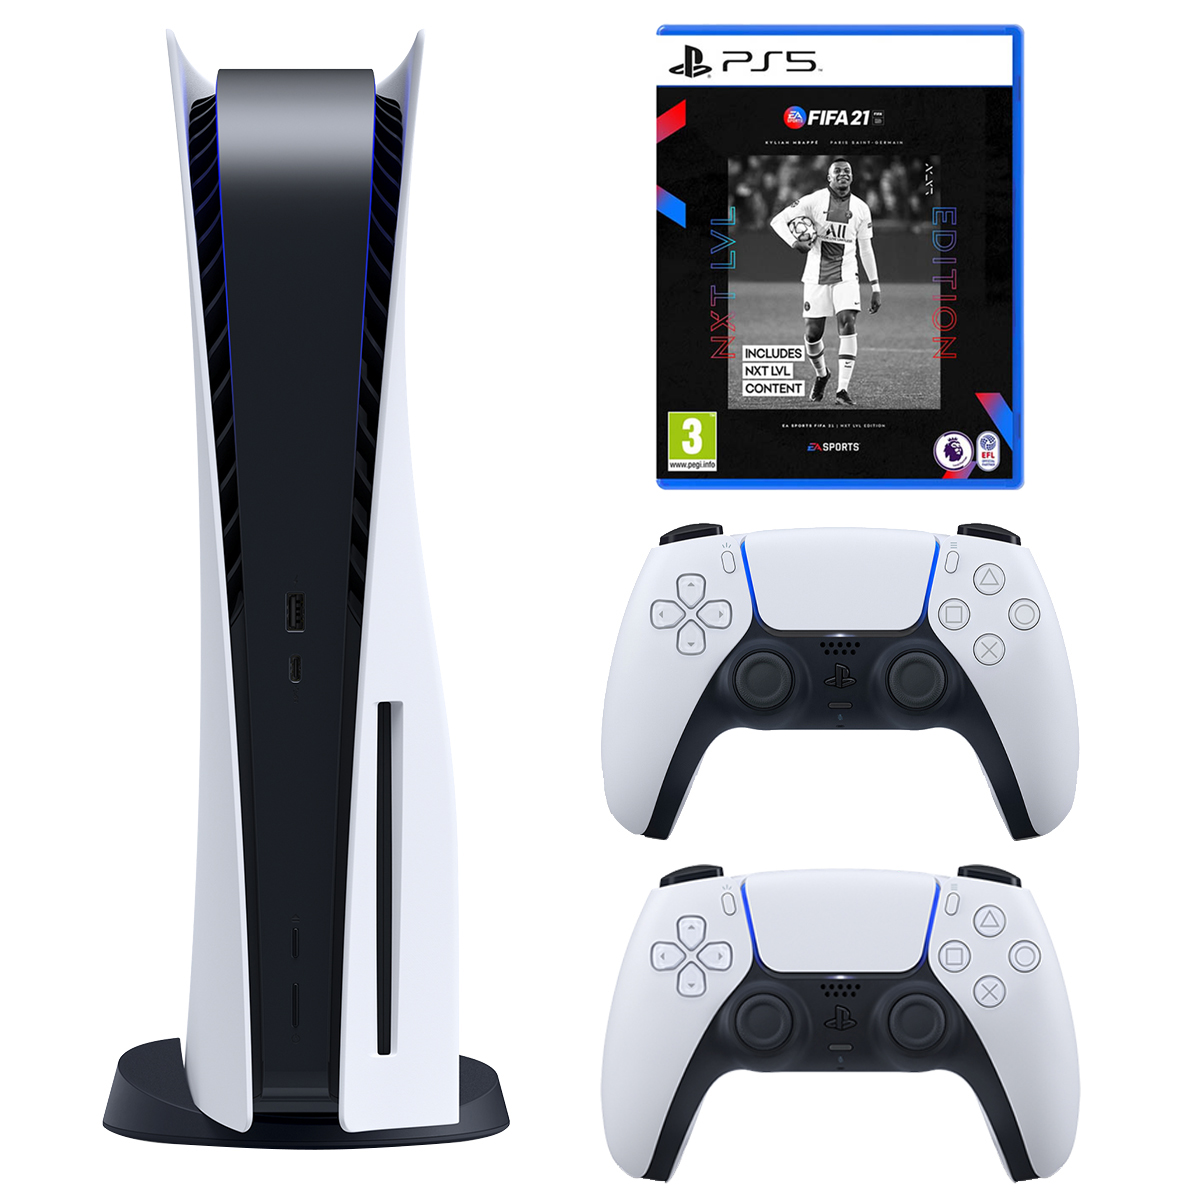 نکته خرید - قیمت روز مجموعه کنسول بازی سونی مدل PlayStation 5 Drive ظرفیت 825 گیگابایت به همراه بازی فیفاPS5 21 خرید